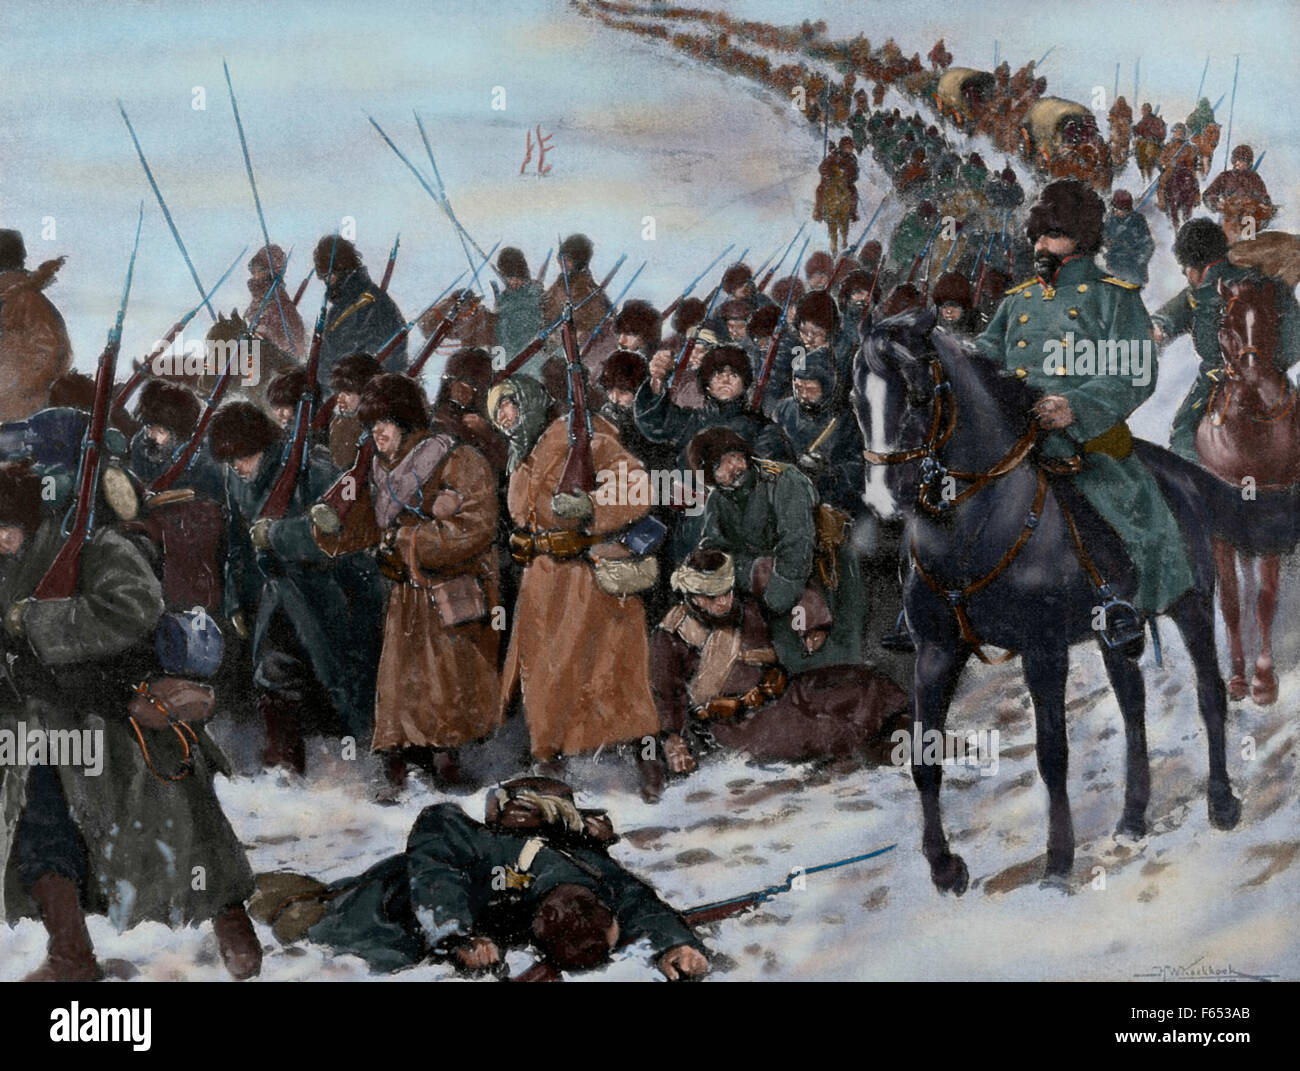 Russo-japanischer Krieg (1904-1905). Spalte von japanischen Soldaten marschieren unter der Kälte und Müdigkeit bekämpfen. Gravur. Farbige. Stockfoto